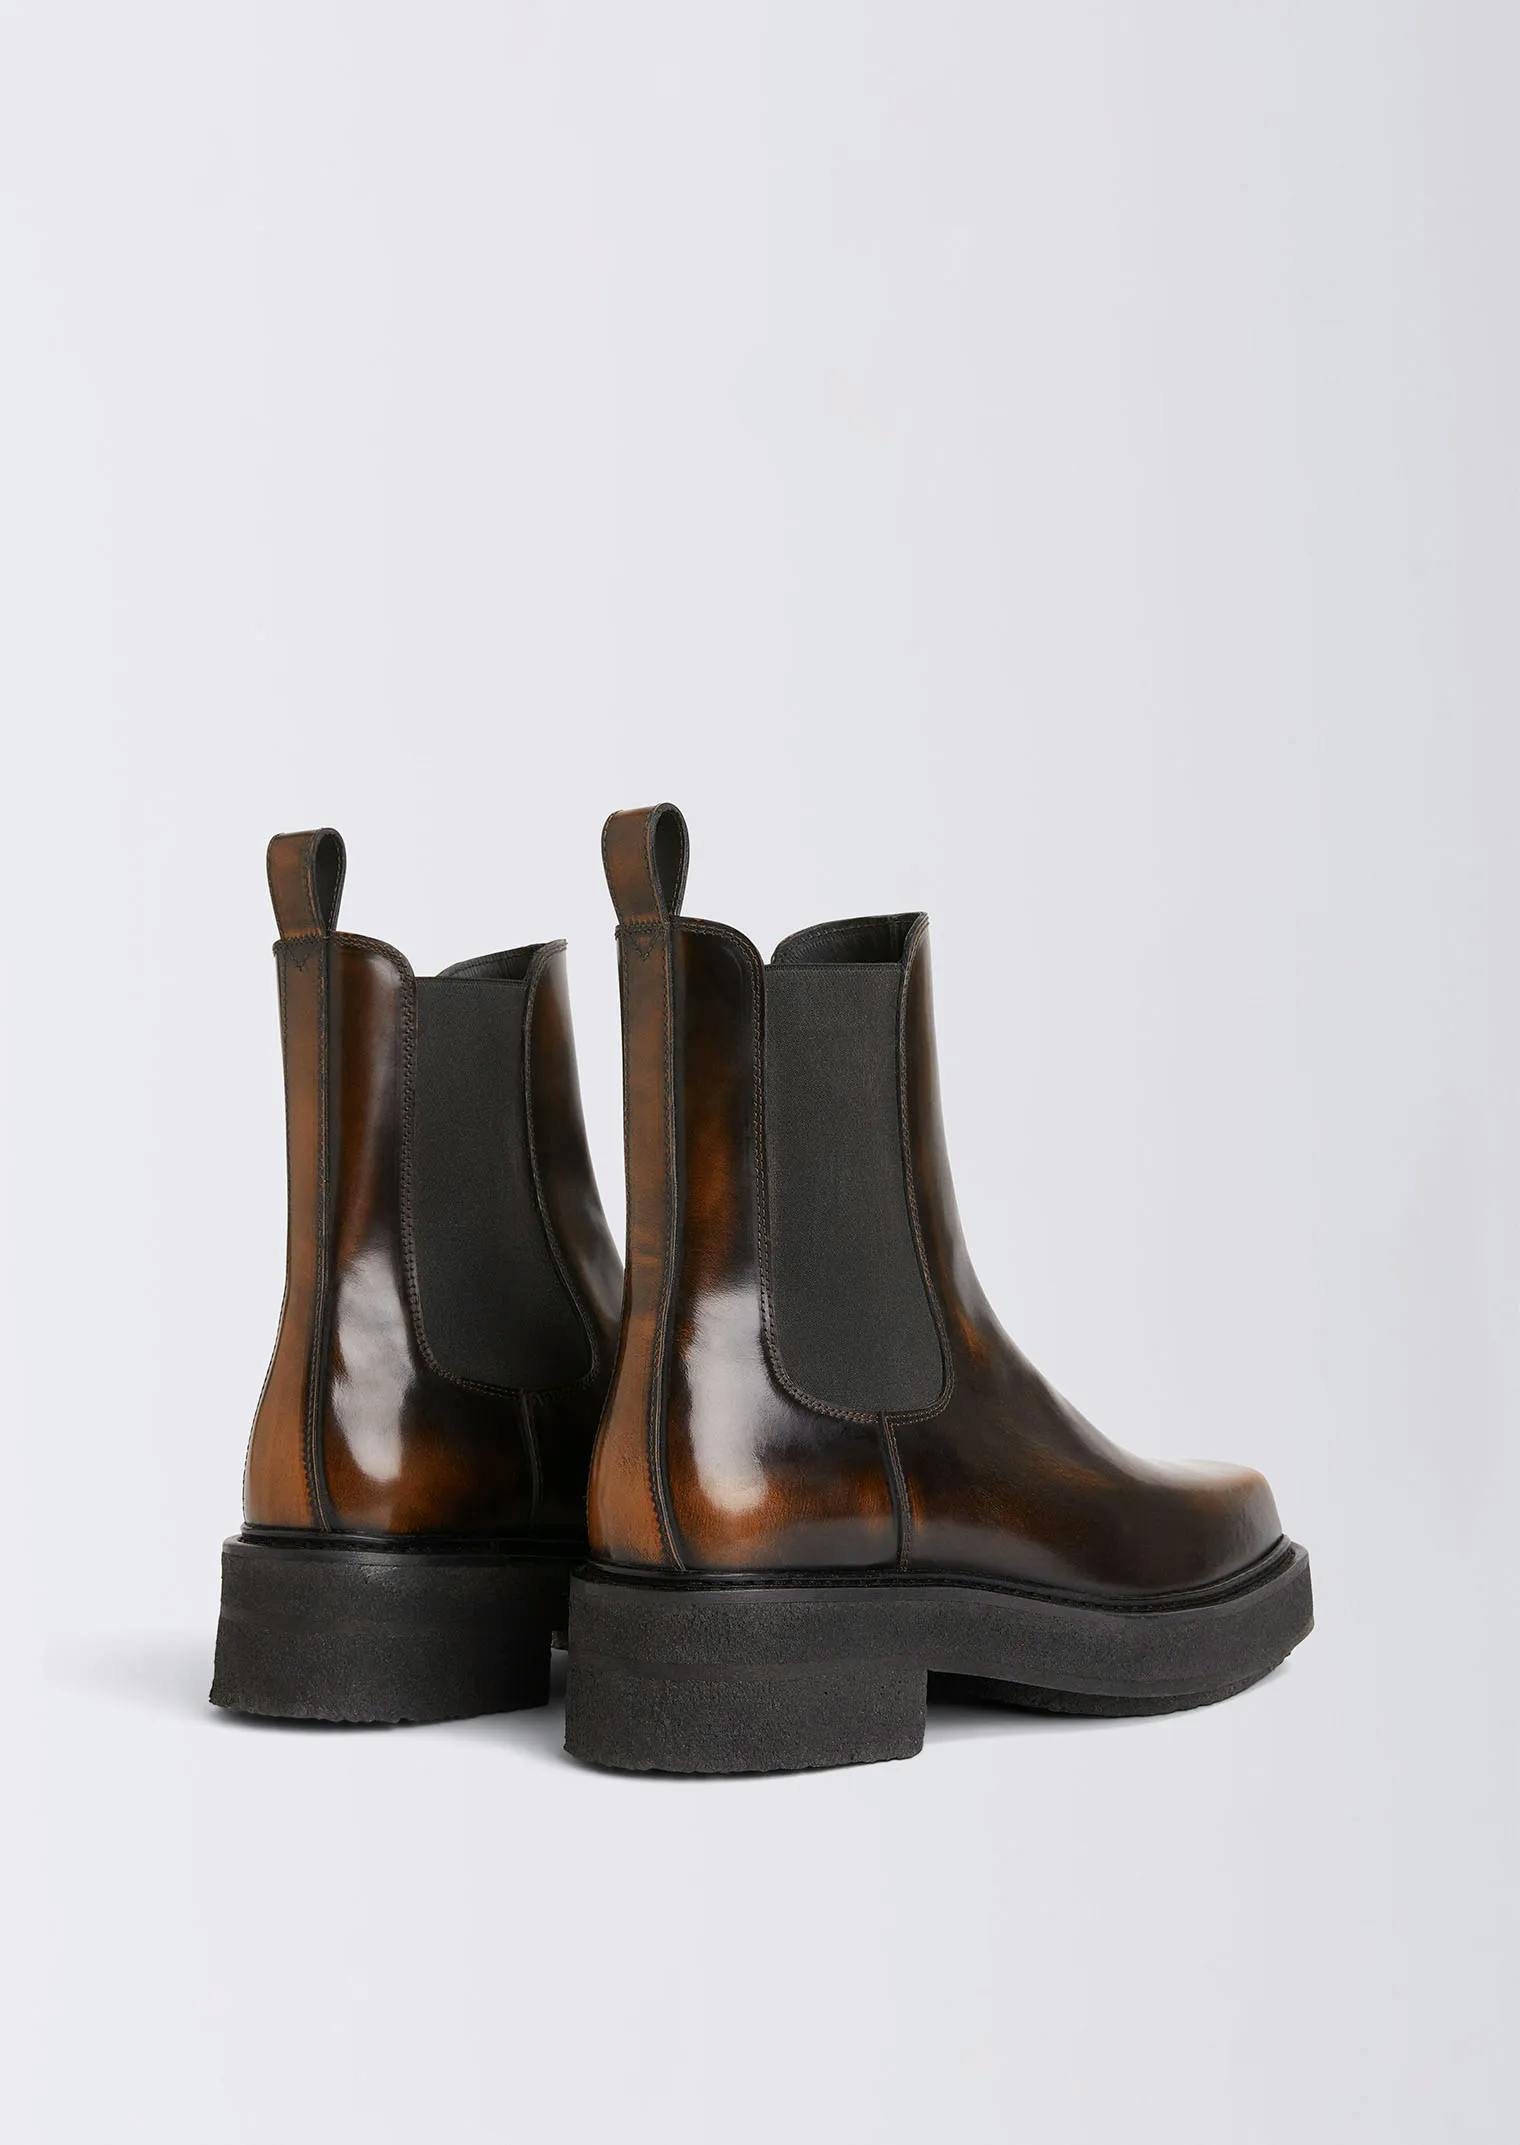 オリジナル Eytys ortega leather サイドゴアブーツ 42エイティーズ - 靴